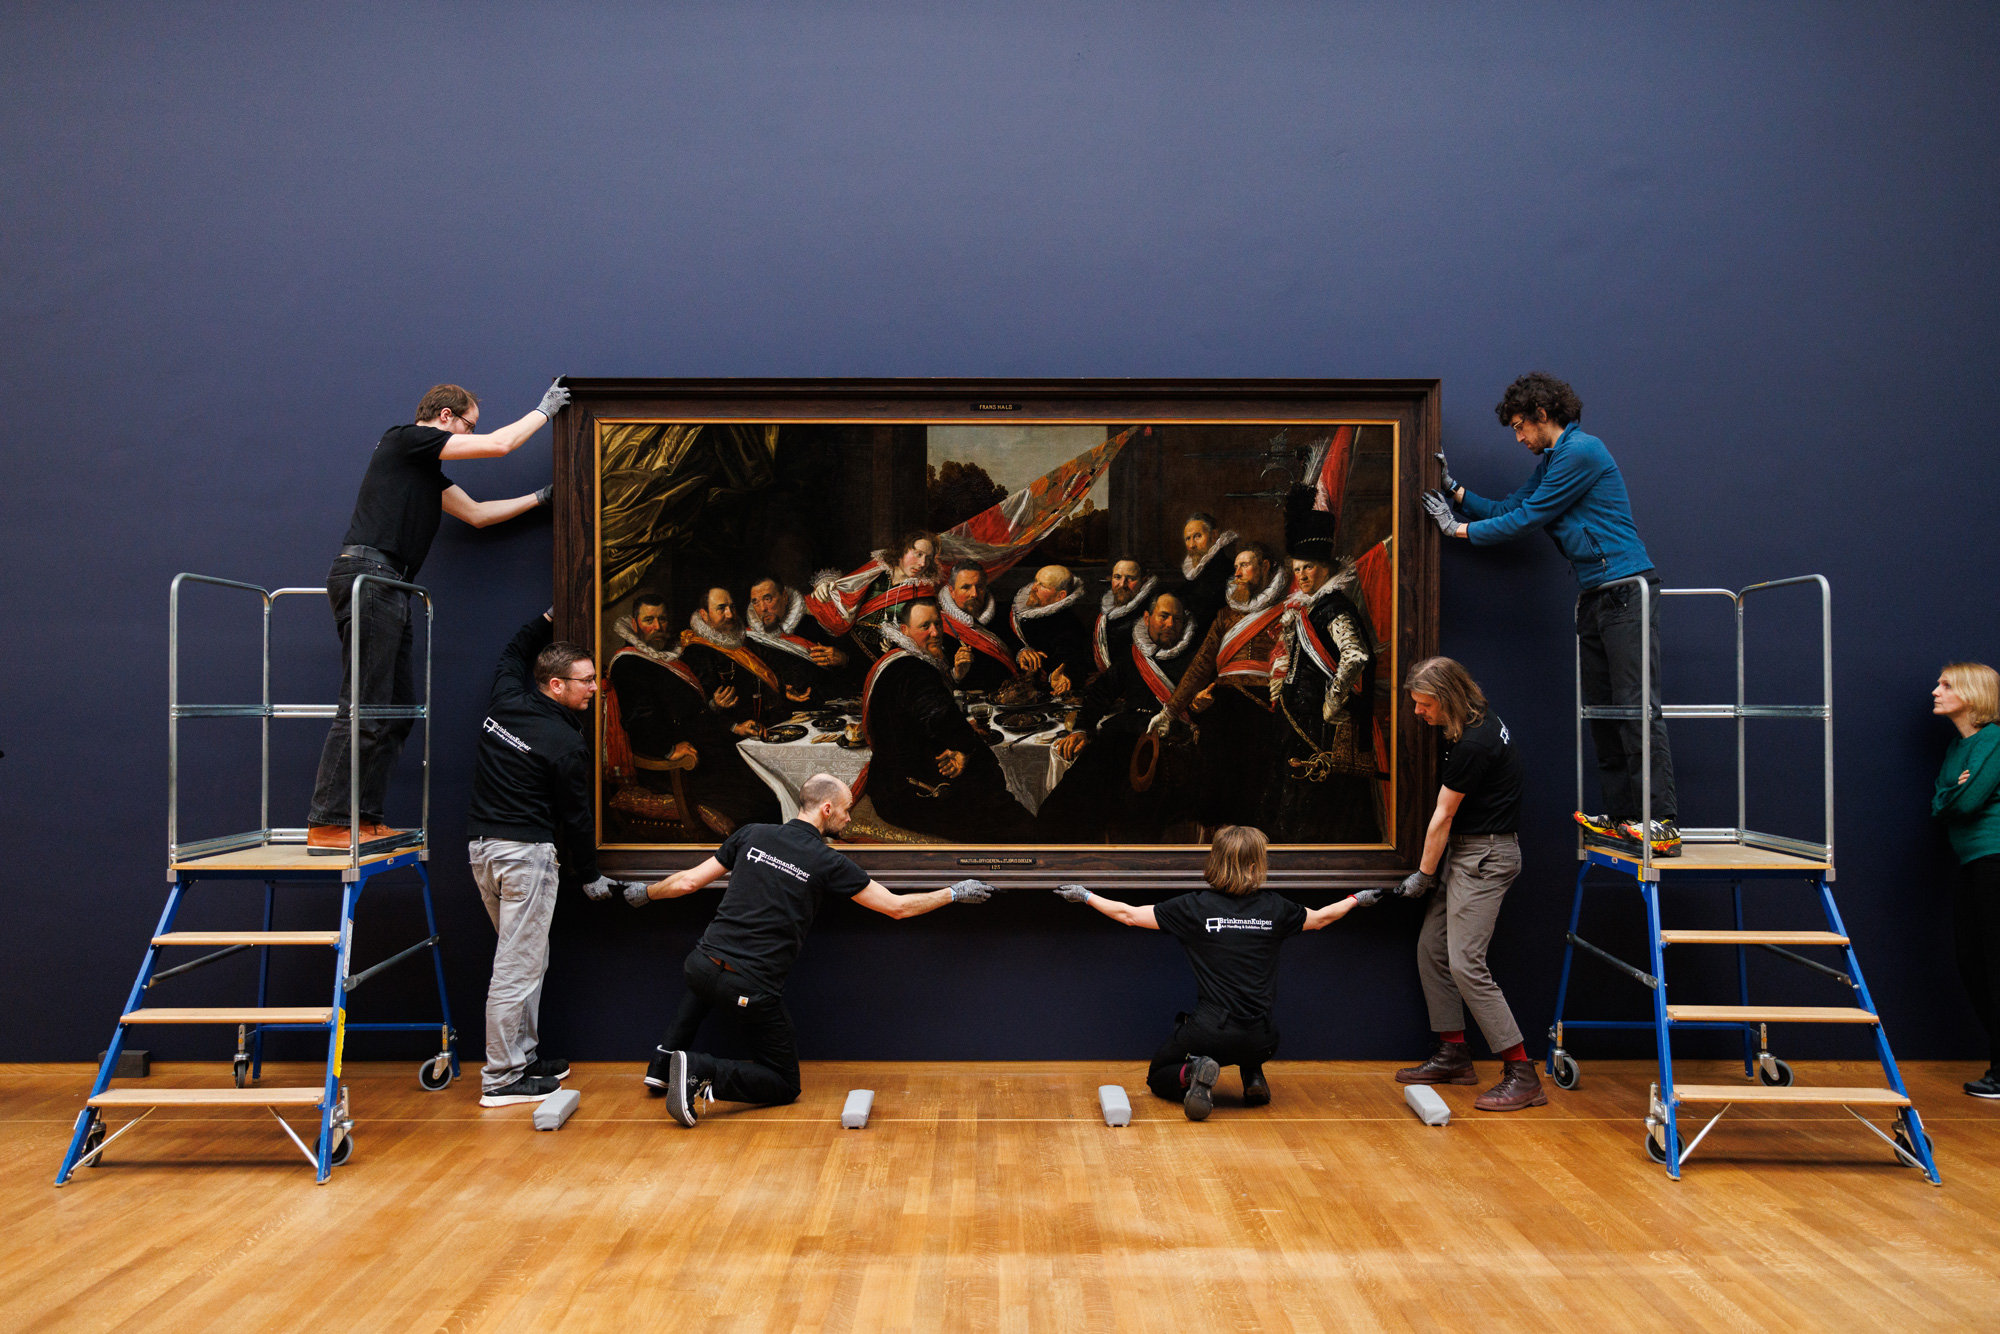 Installatie van het Feestmaal van de officieren van de St. Jorisschutterij uit het Frans Hals Museum, Haarlem Foto: Rijksmuseum/ Kelly Schenk